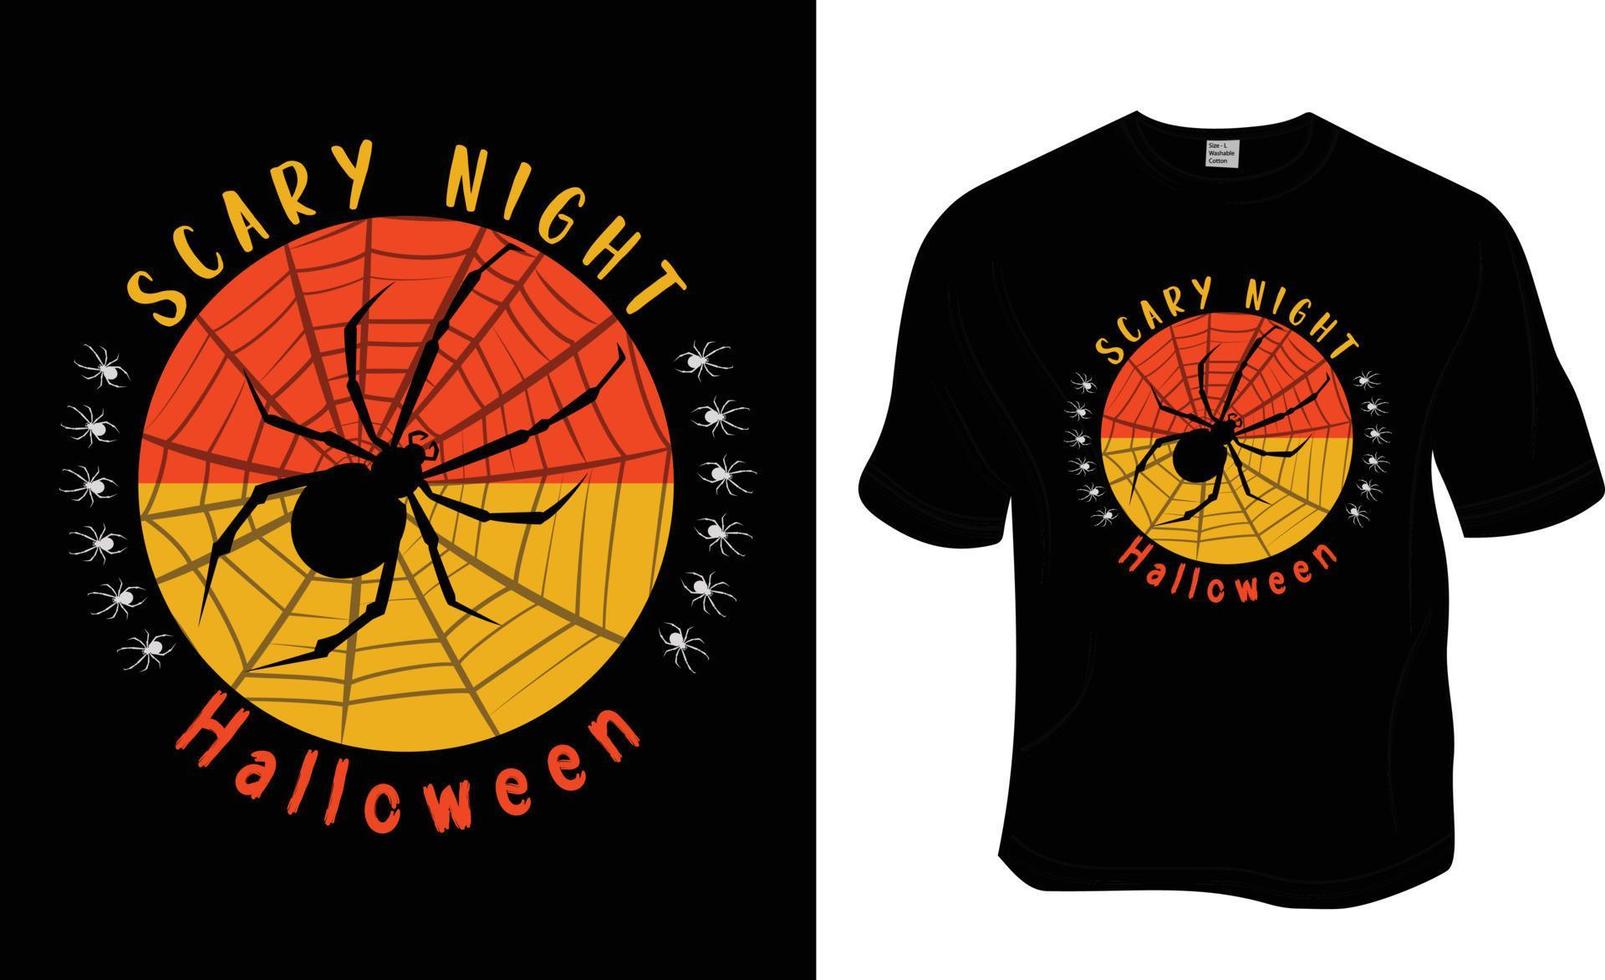 Gruseliges Nachthalloween-T-Shirt-Design. druckfertig für Bekleidung, Poster und Illustrationen. moderner, einfacher T-Shirt-Vektor mit Schriftzug. vektor